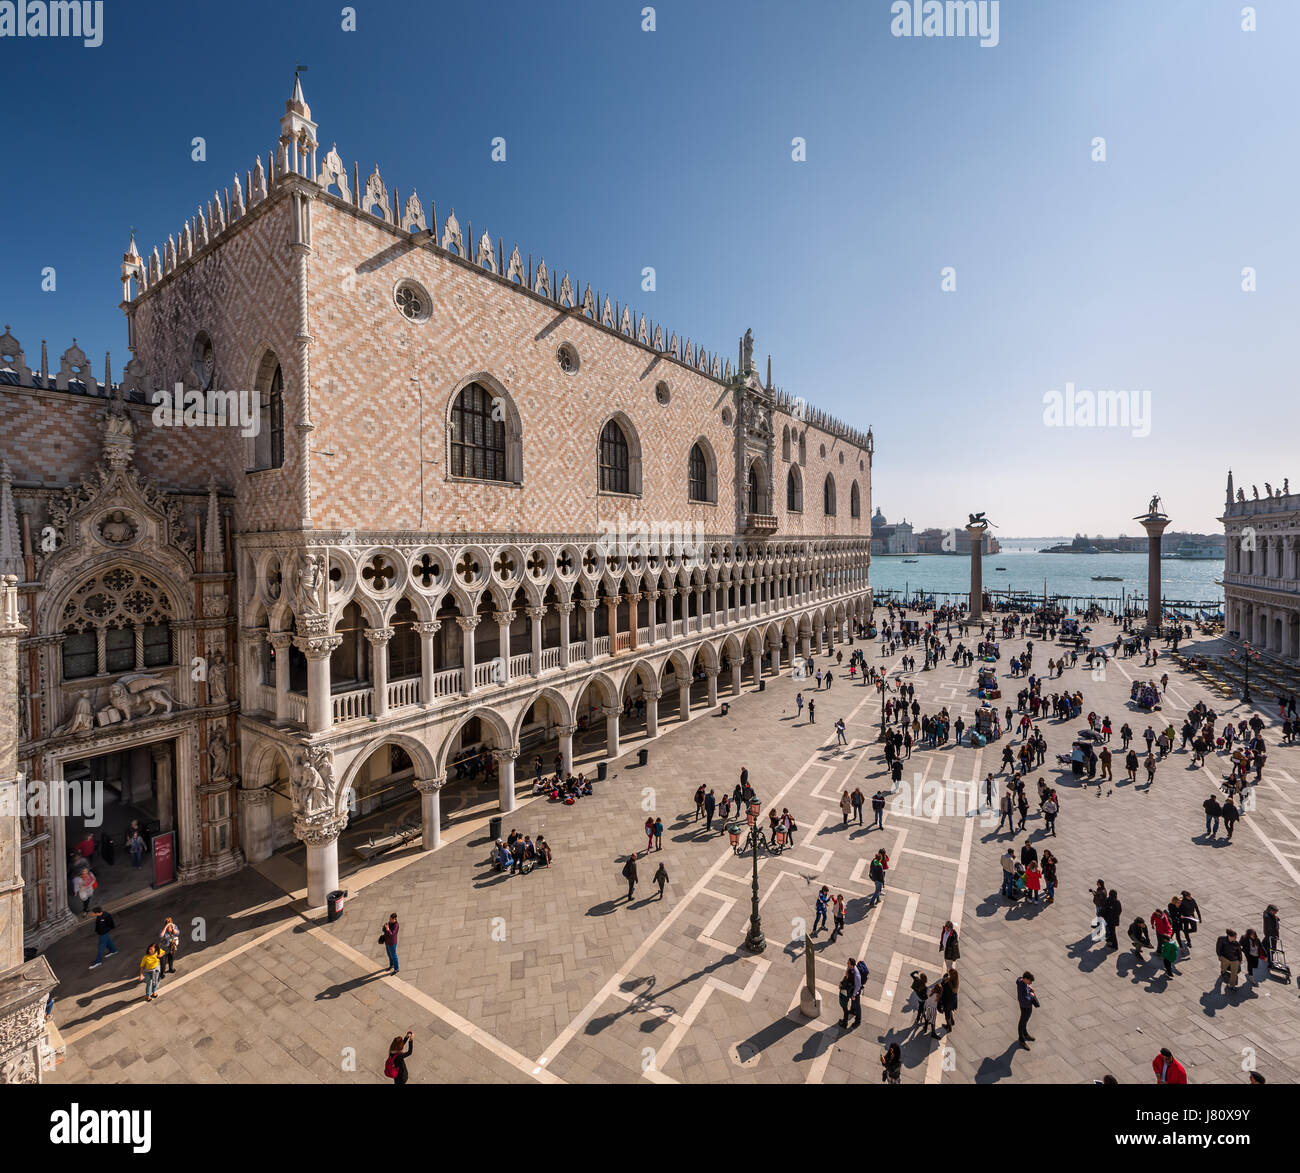 Venise, Italie - 8 mars : Palais des Doges, le 8 mars 2014 à Venise, Italie. Auparavant la résidence du Doge et maintenant un musée, le palais est l'un des th Banque D'Images